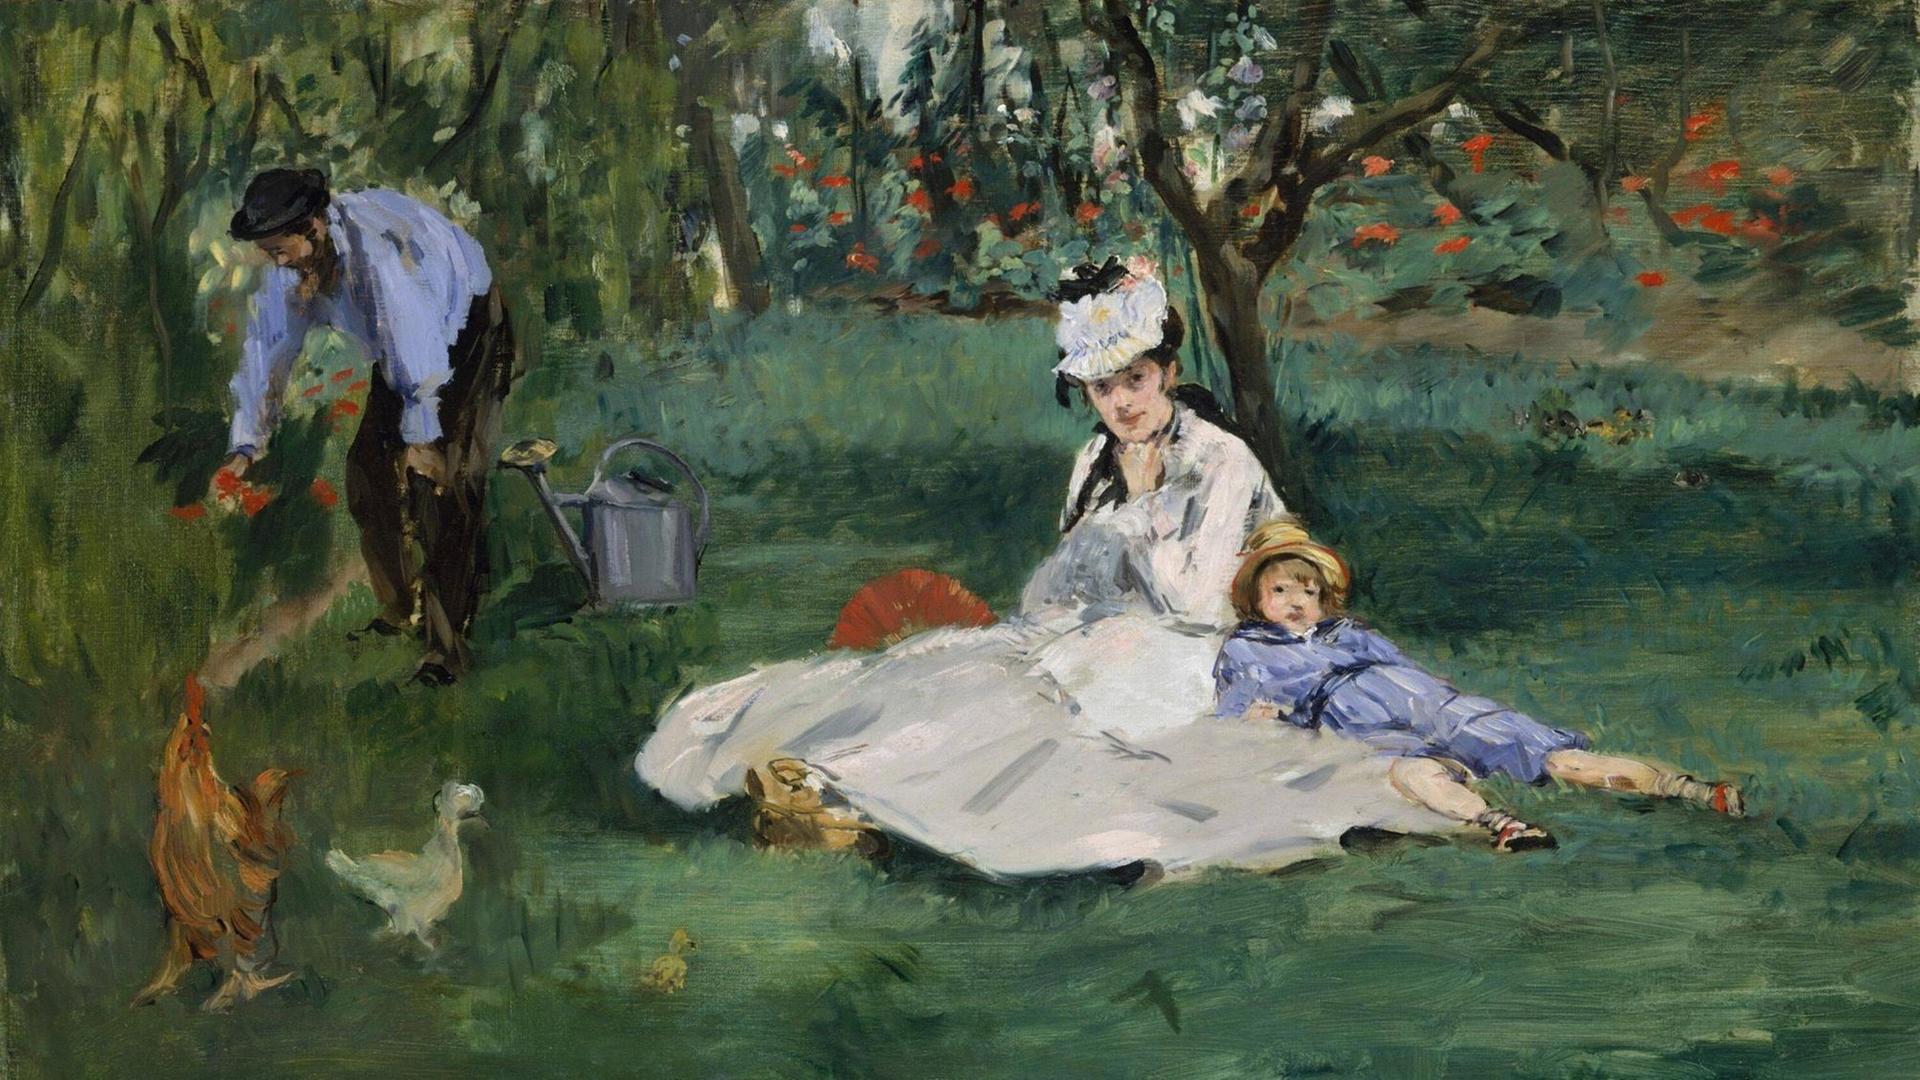 Die Familie Monet – Mutter, Vater, Sohn – auf einer Wiese, gemalt von Édouard Manet.